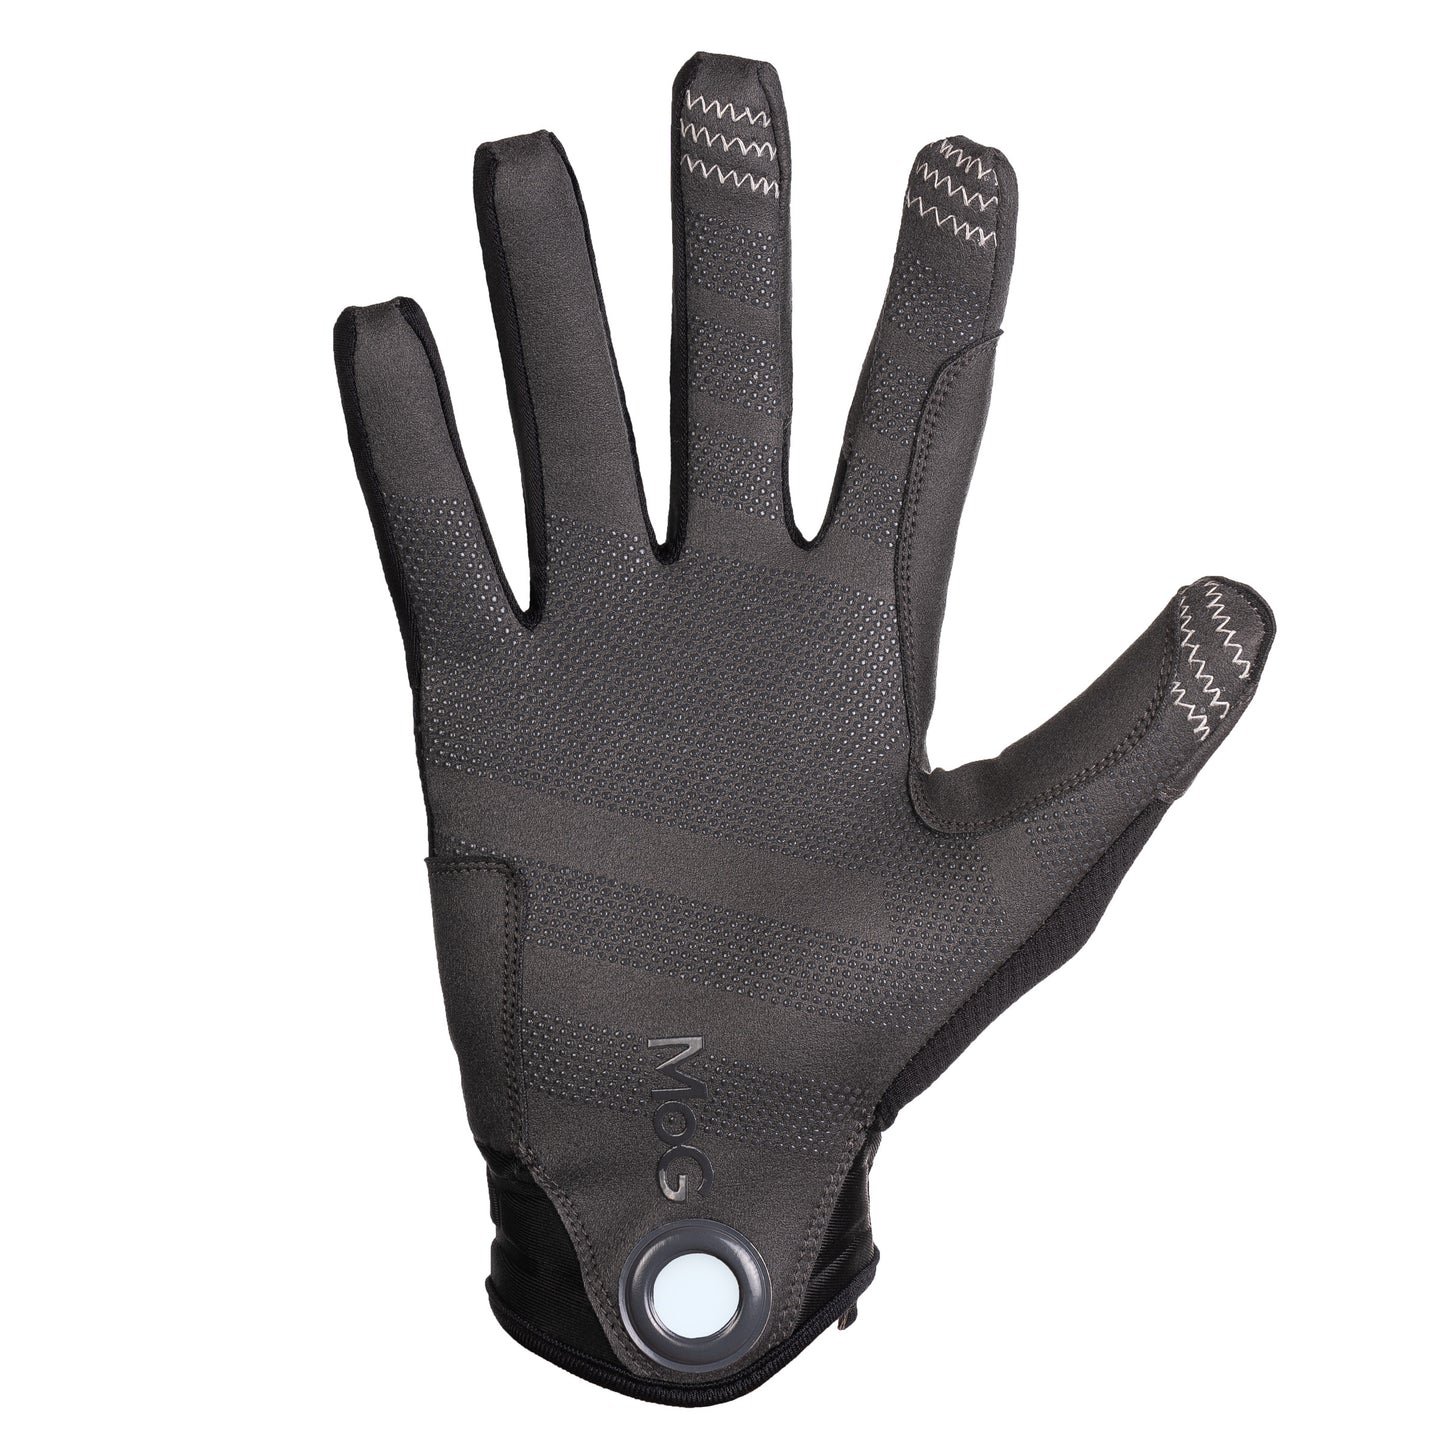 MoG Target High Abrasion Tactical Gloves